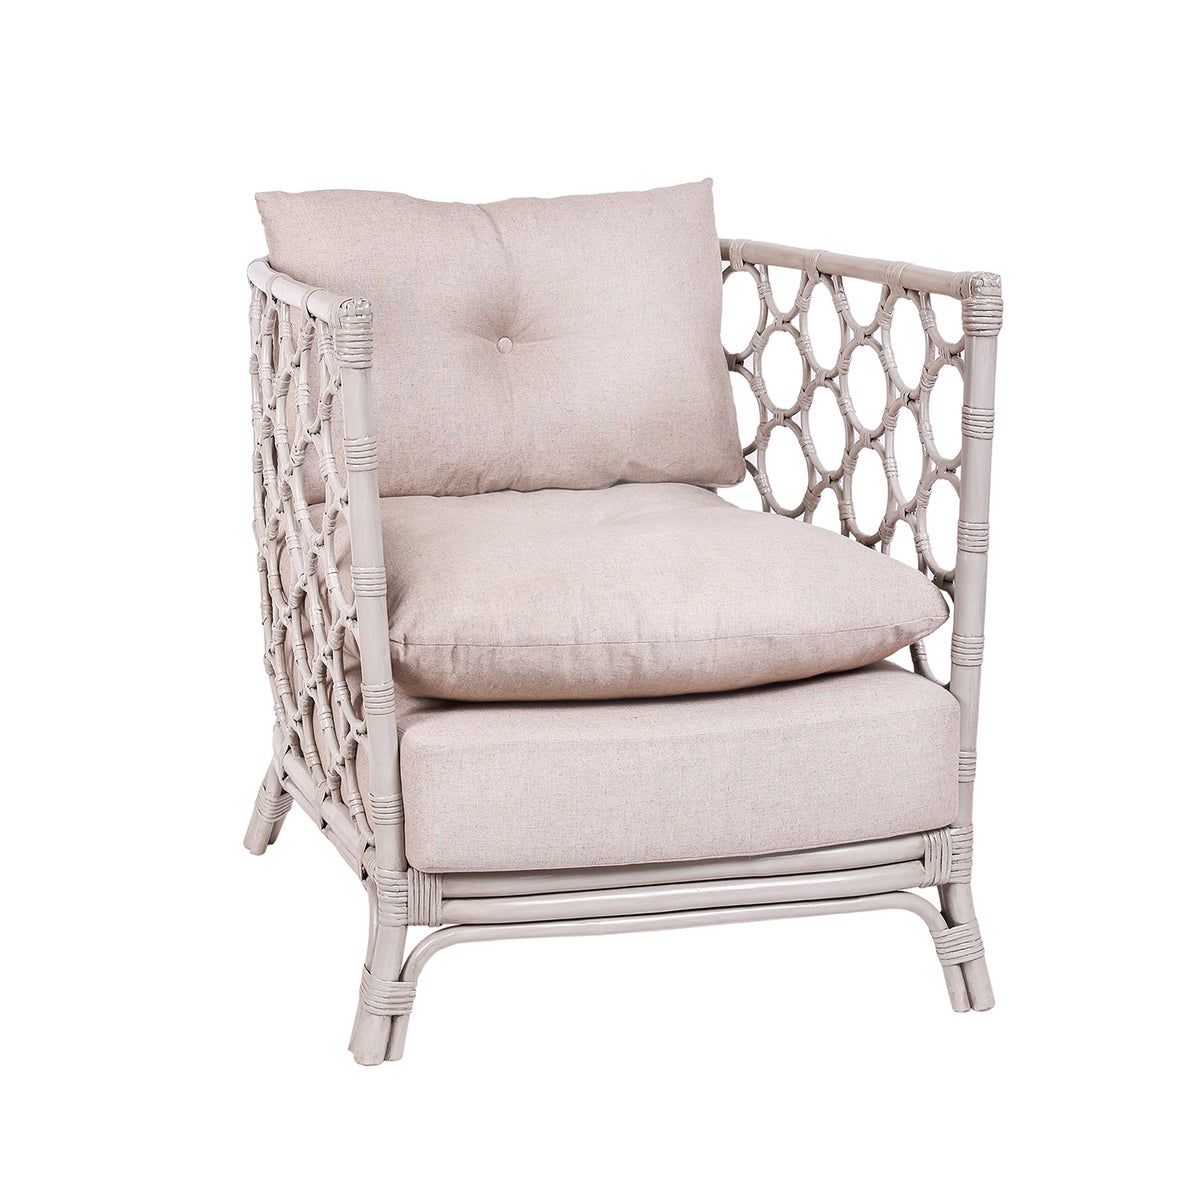 Molly Rattan Chair, Thick Cushion